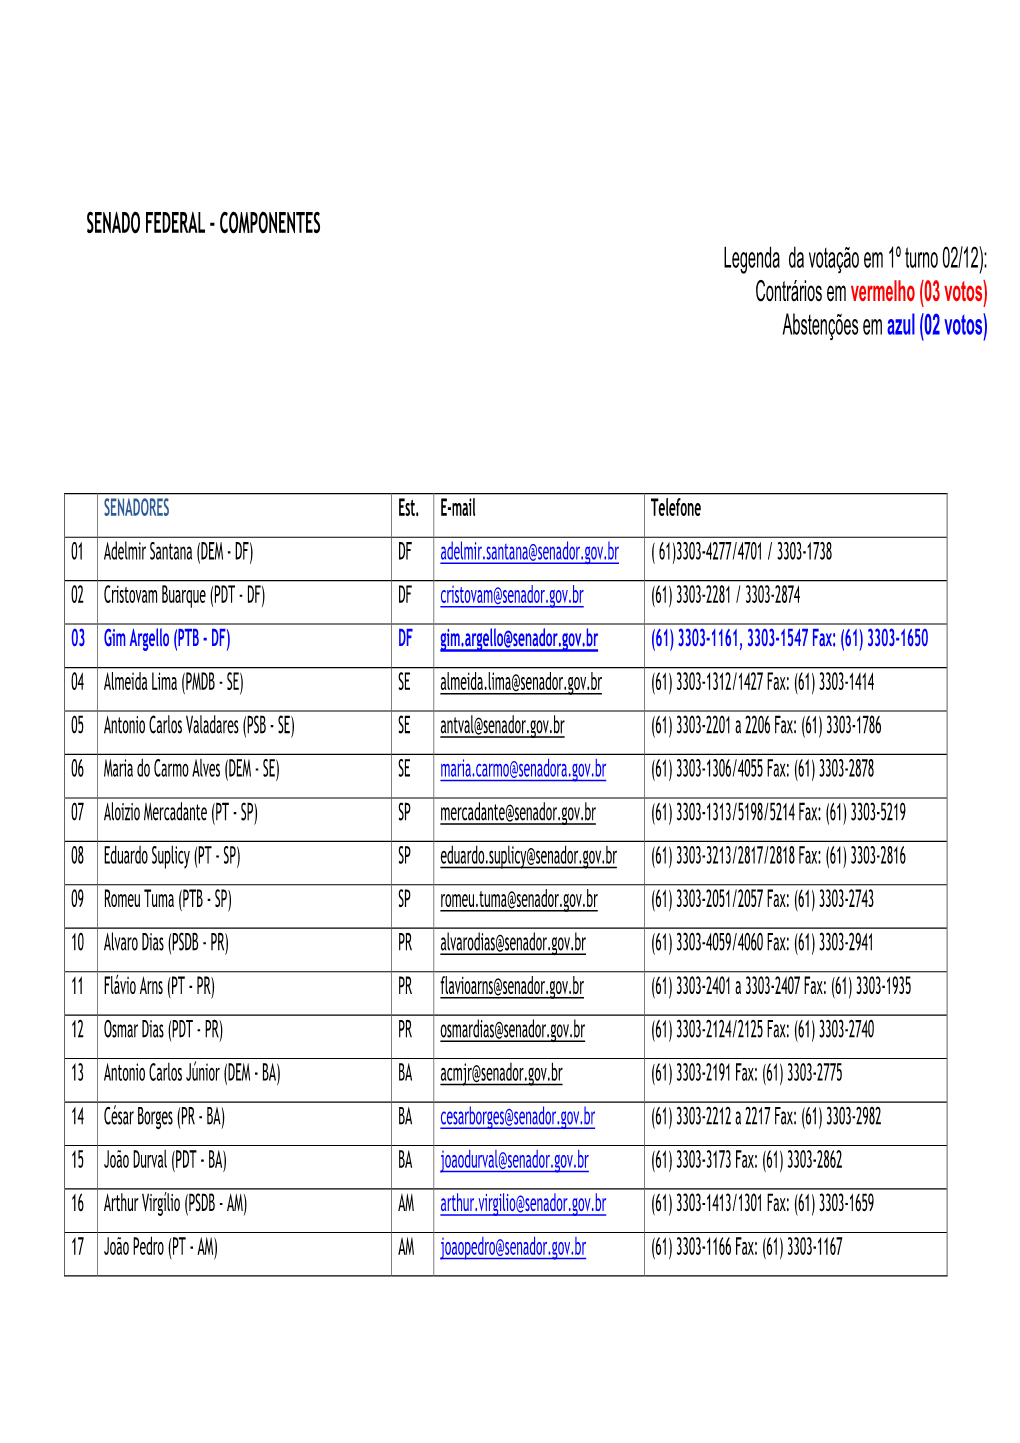 SENADO FEDERAL – COMPONENTES Legenda Da Votação Em 1º Turno 02/12): Contrários Em Vermelho (03 Votos) Abstenções Em Azul (02 Votos)